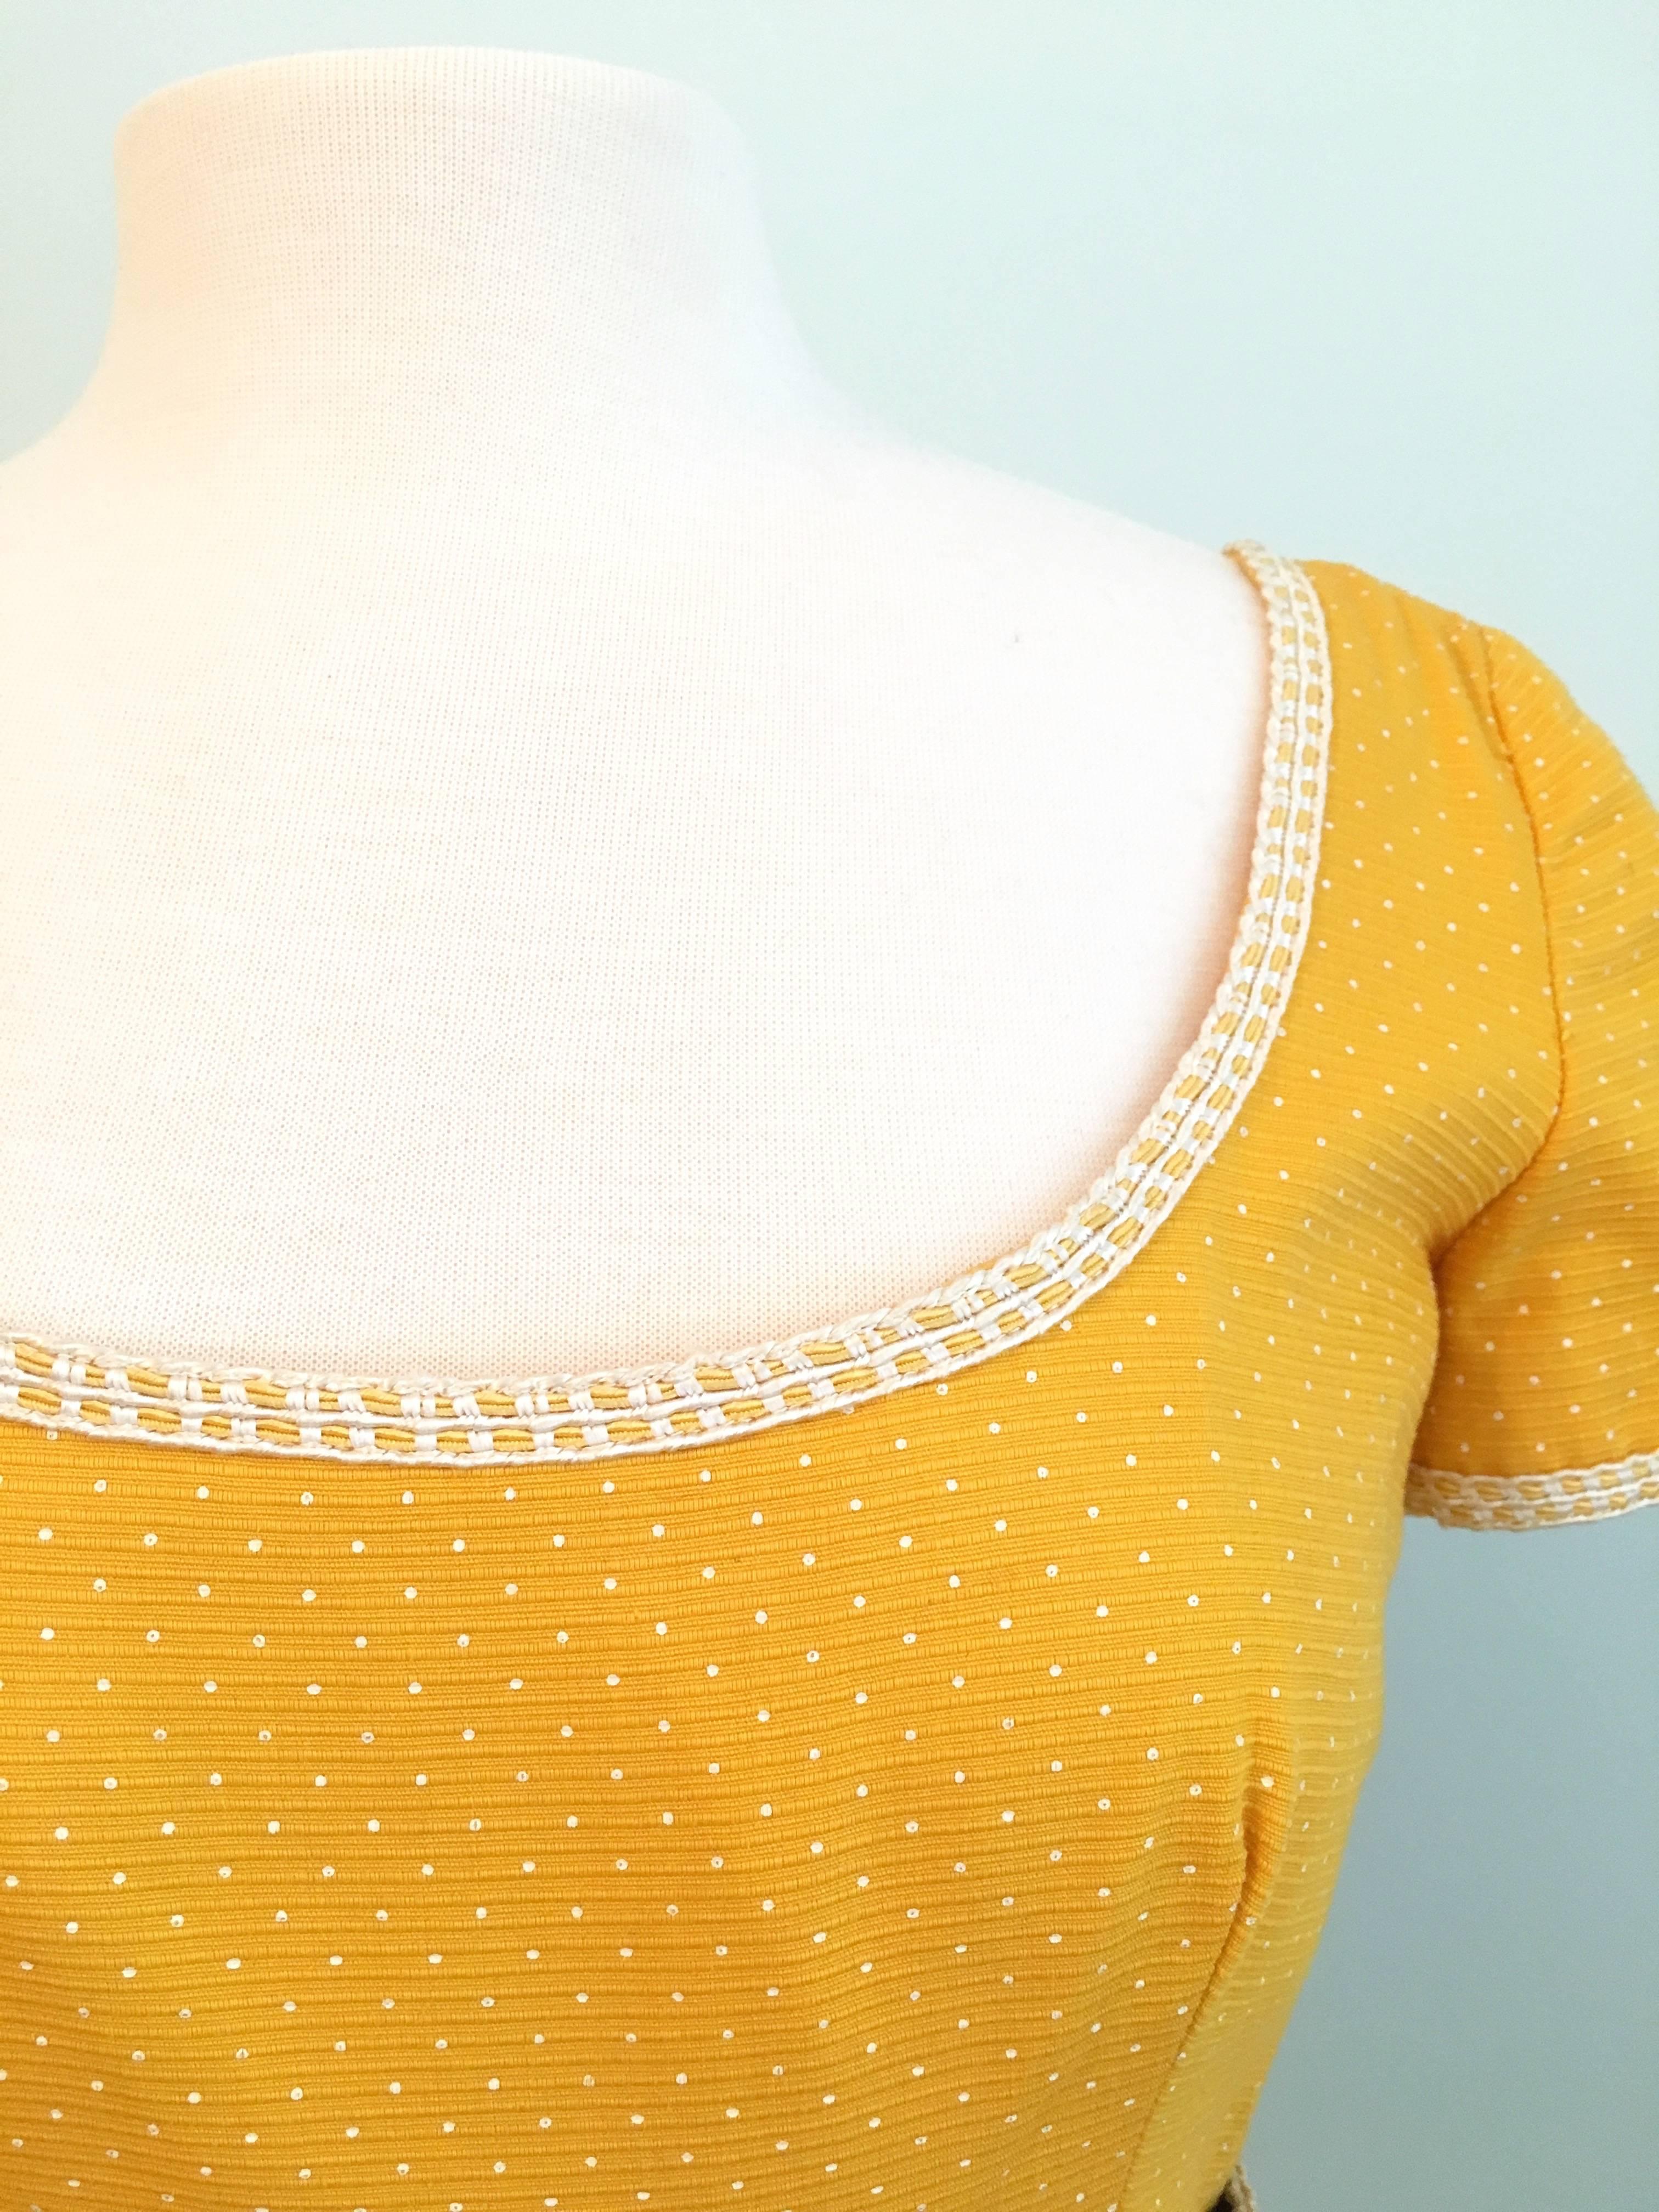 Oscar De La Renta Boutique Yellow Polka Dot Dress, 1960s  For Sale 3